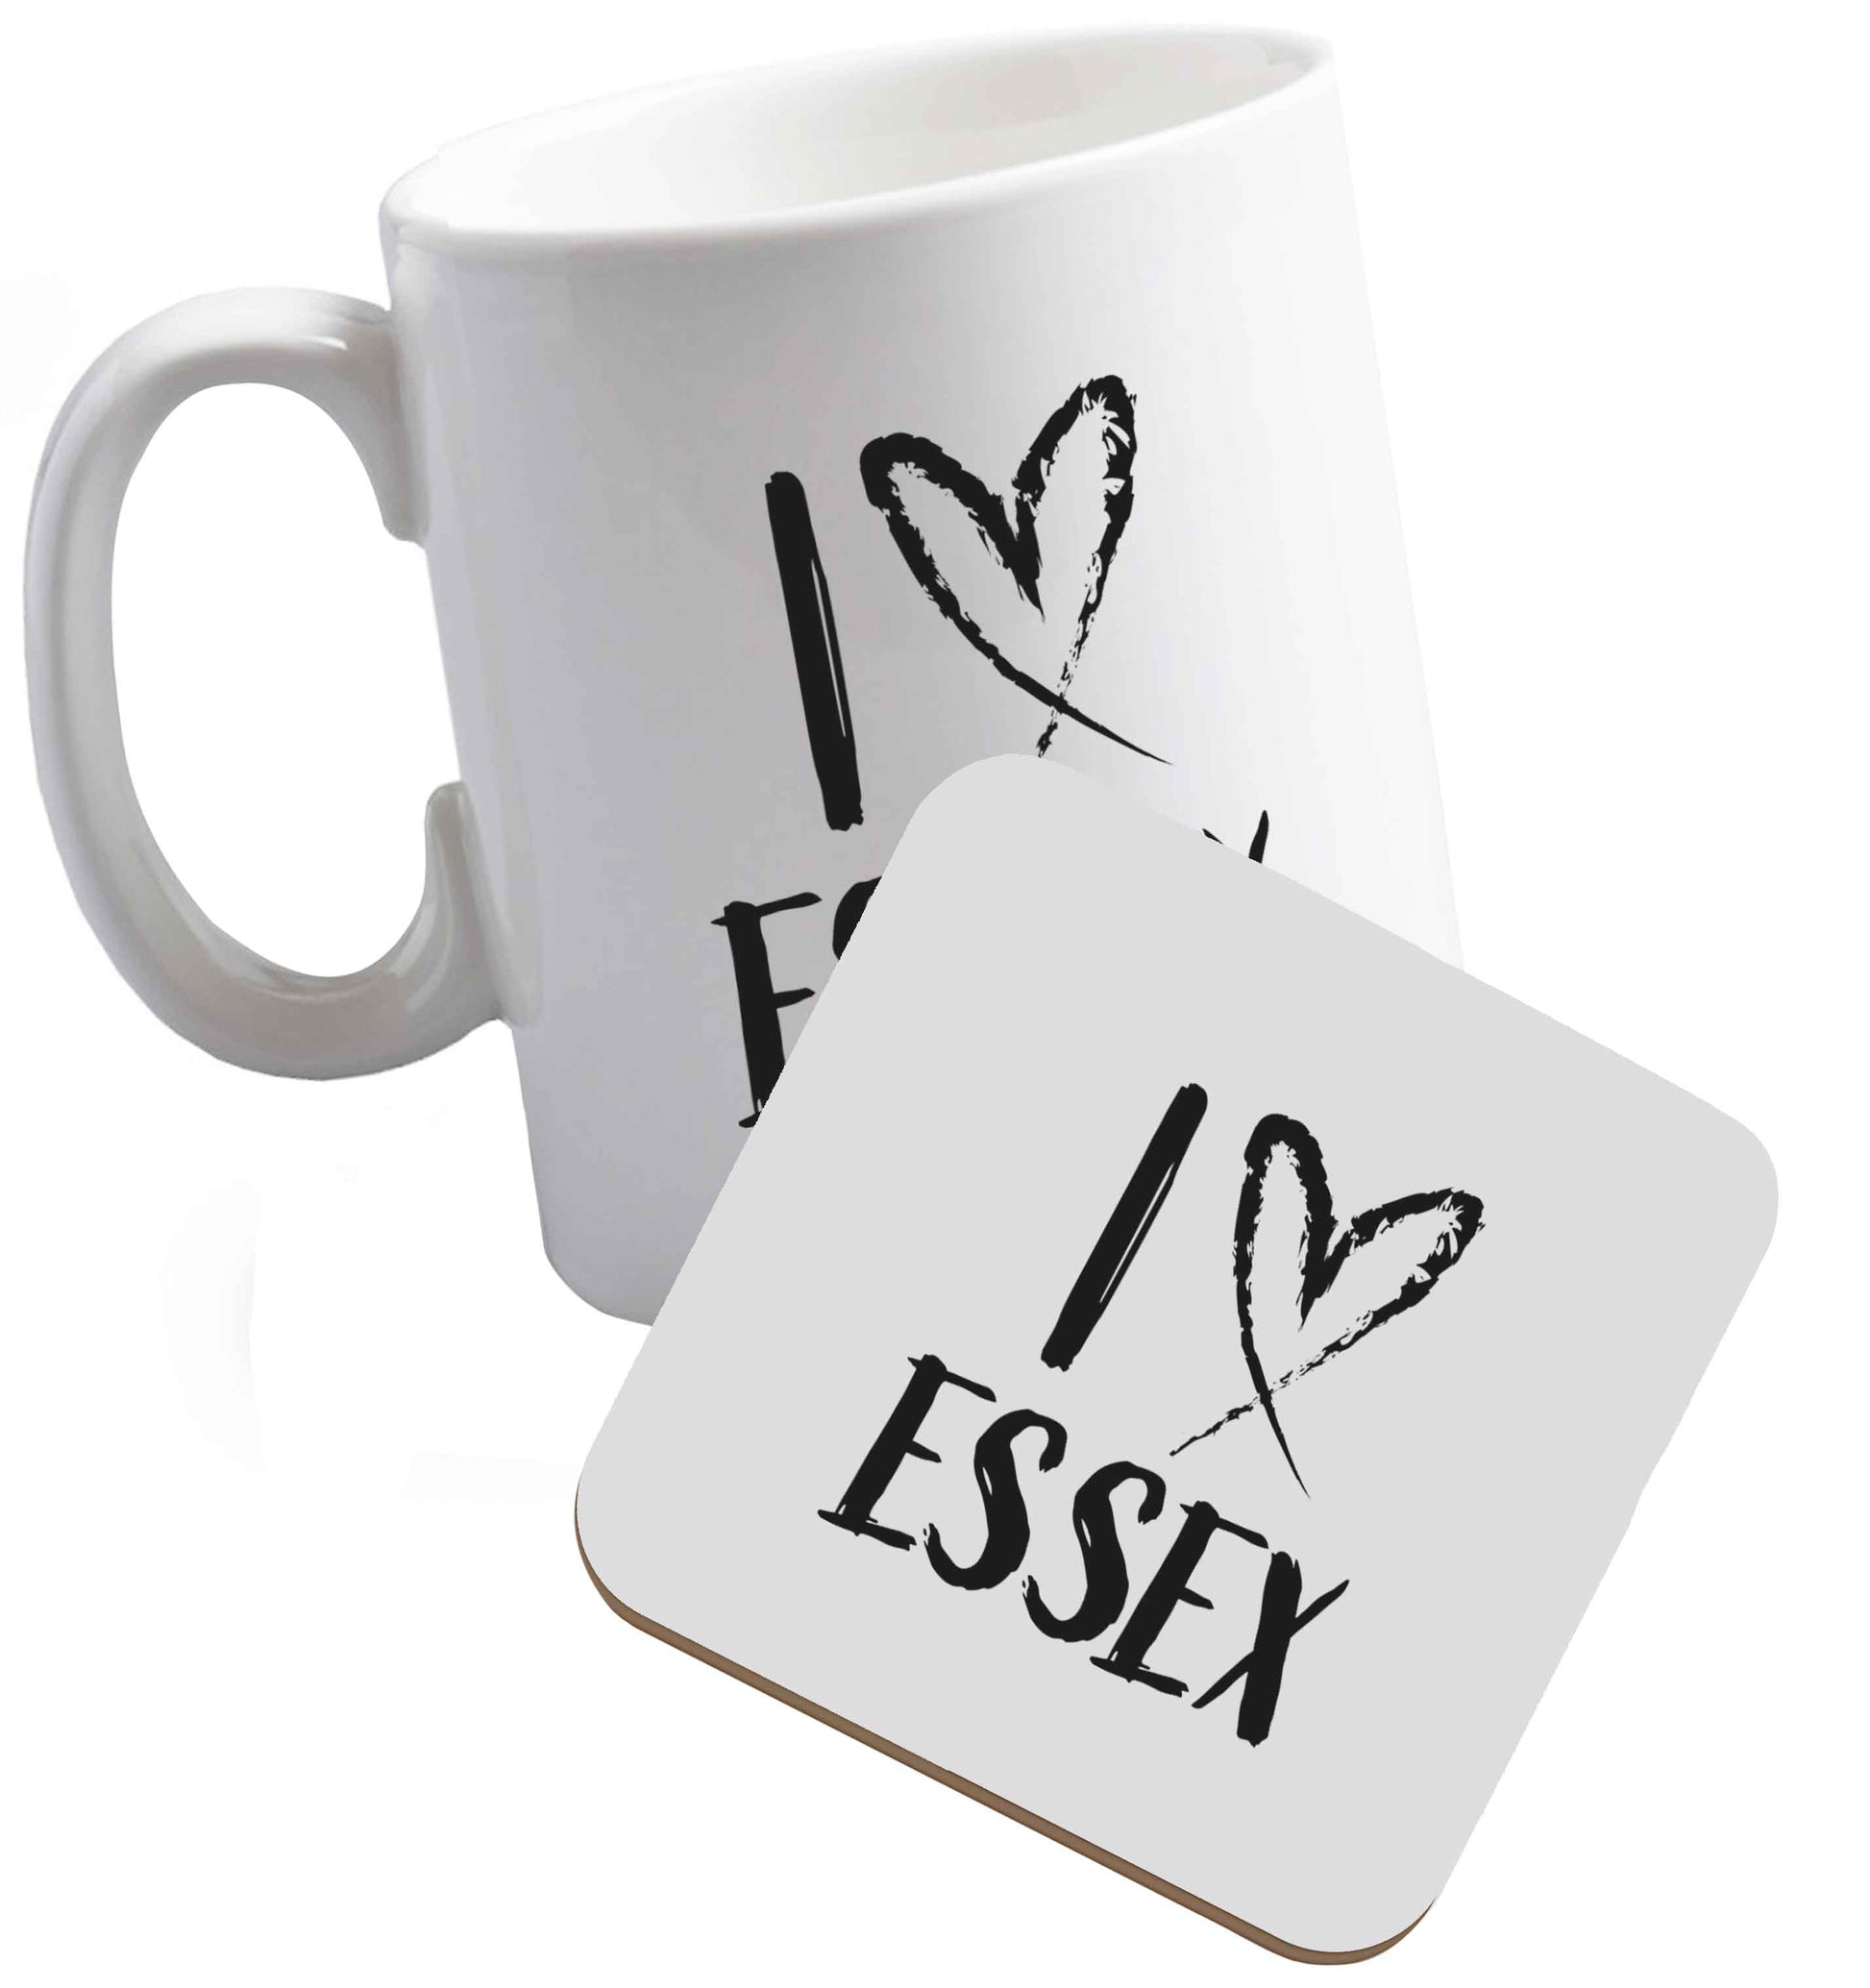 10 oz I love Essex ceramic mug and coaster set right handed